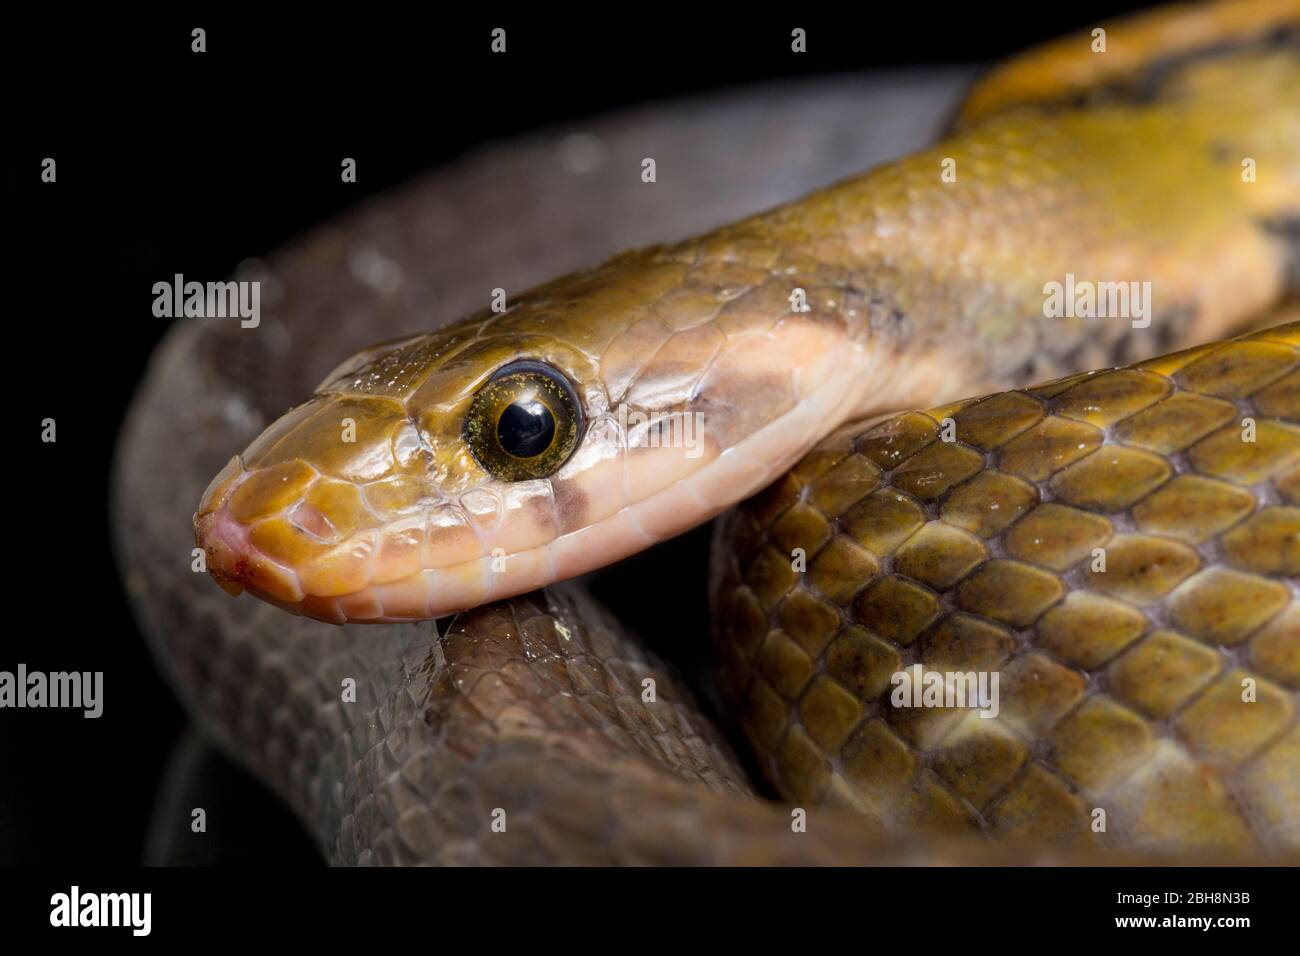 Coelognathus flavolineatus, serpent de rat en cuivre noir ou serpent rayé jaune, isolé sur fond noir Banque D'Images